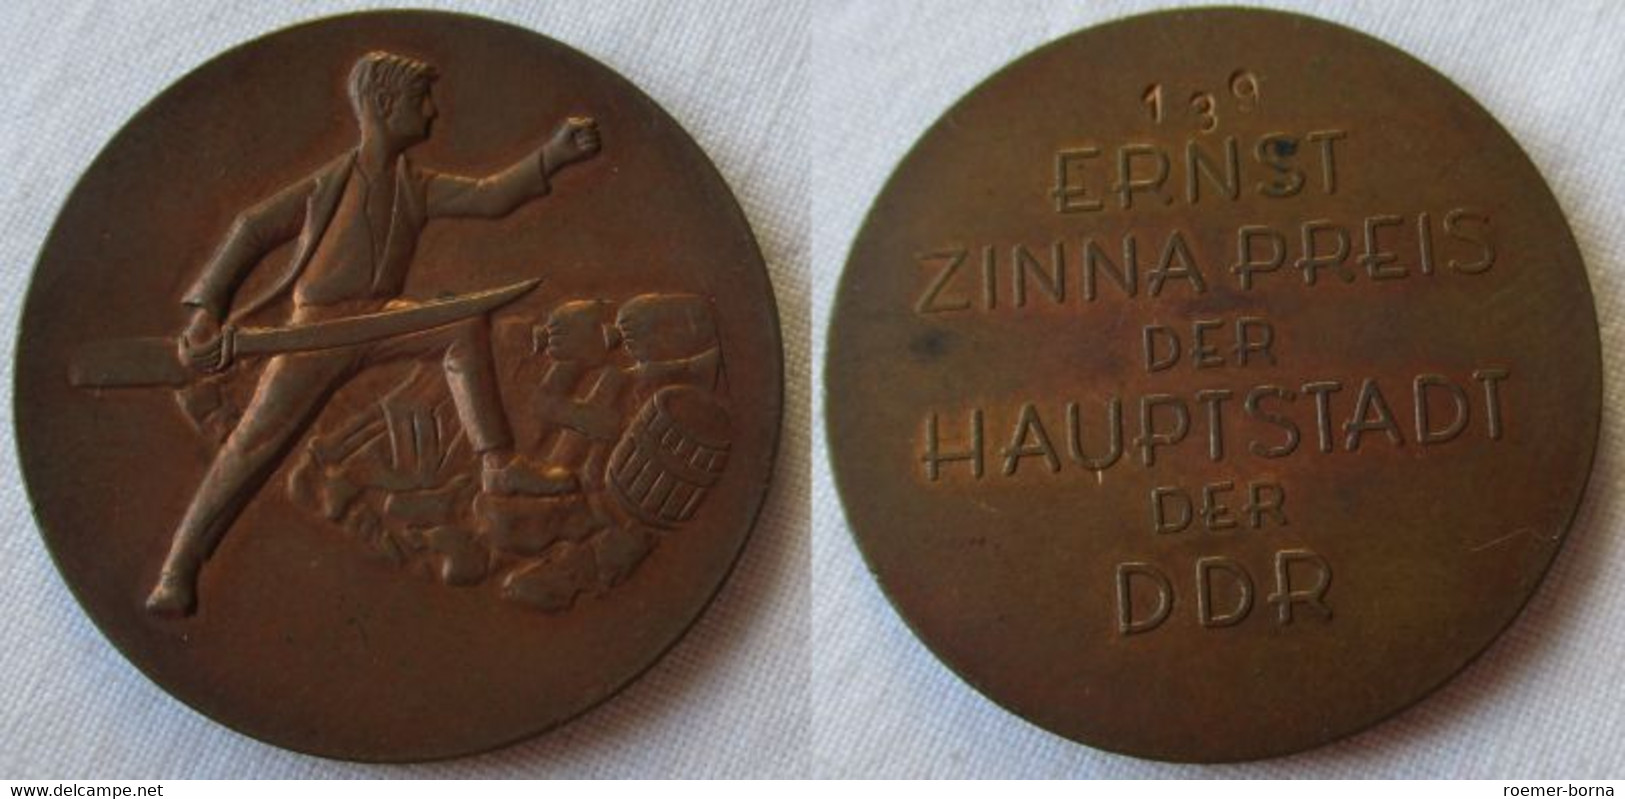 DDR Abzeichen Ernst Zinna Preis Der Hauptstadt Der DDR PROBE Nr. 139 (111165) - DDR